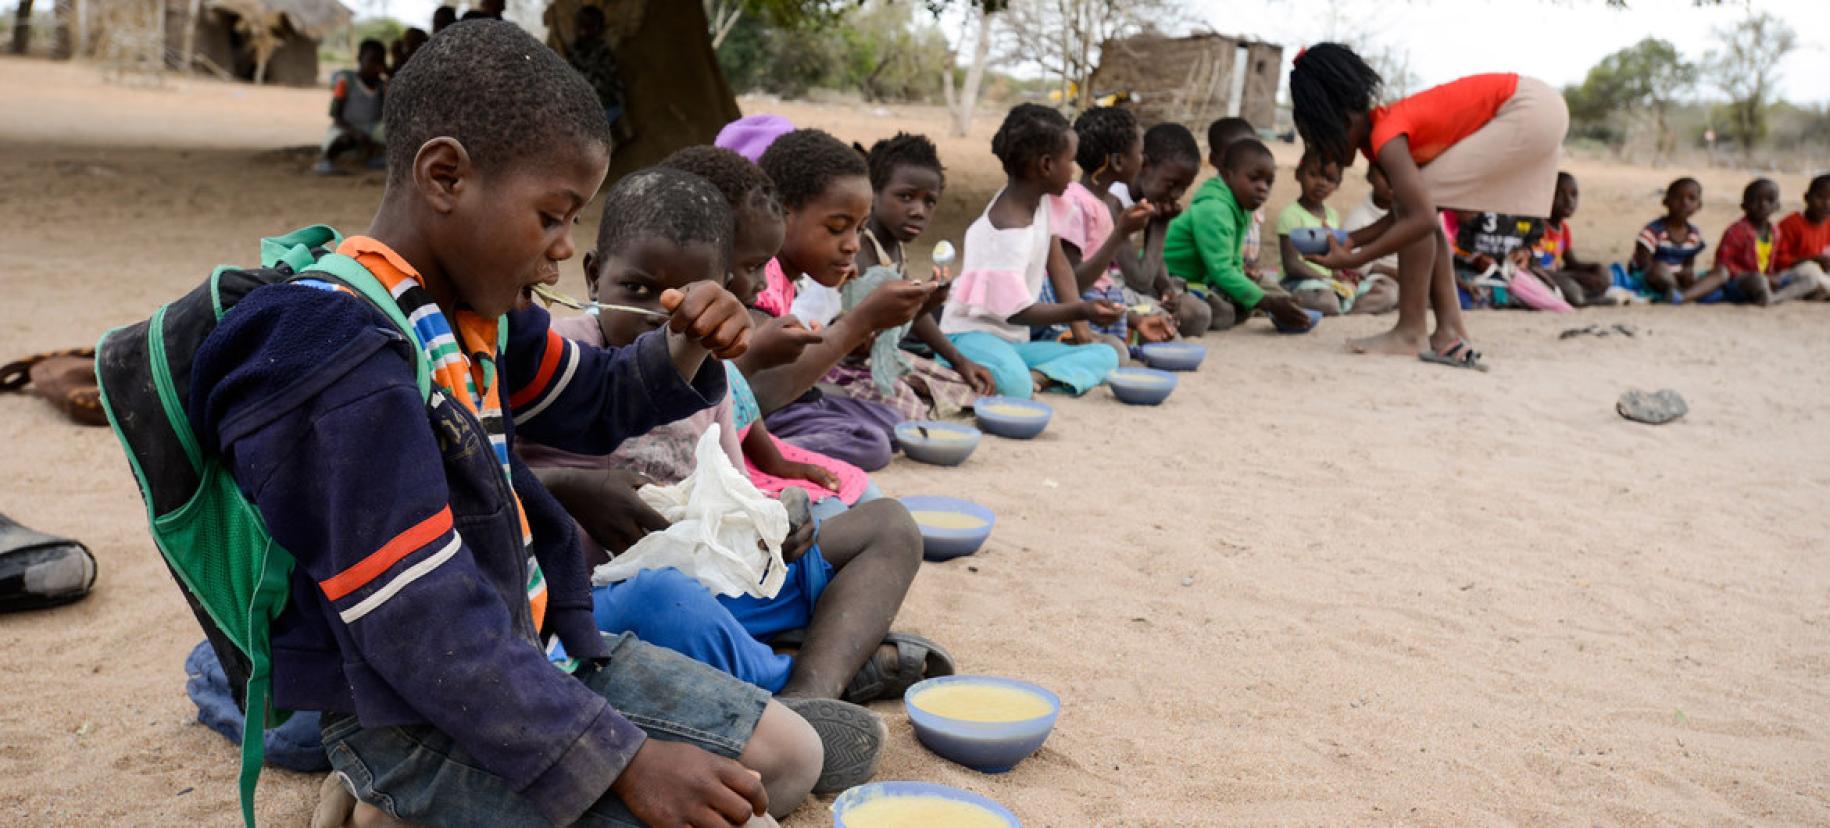 أطفال يأكلون وجبة في إحدى المدارس في مقاطعة مابوتو في موزامبيق.